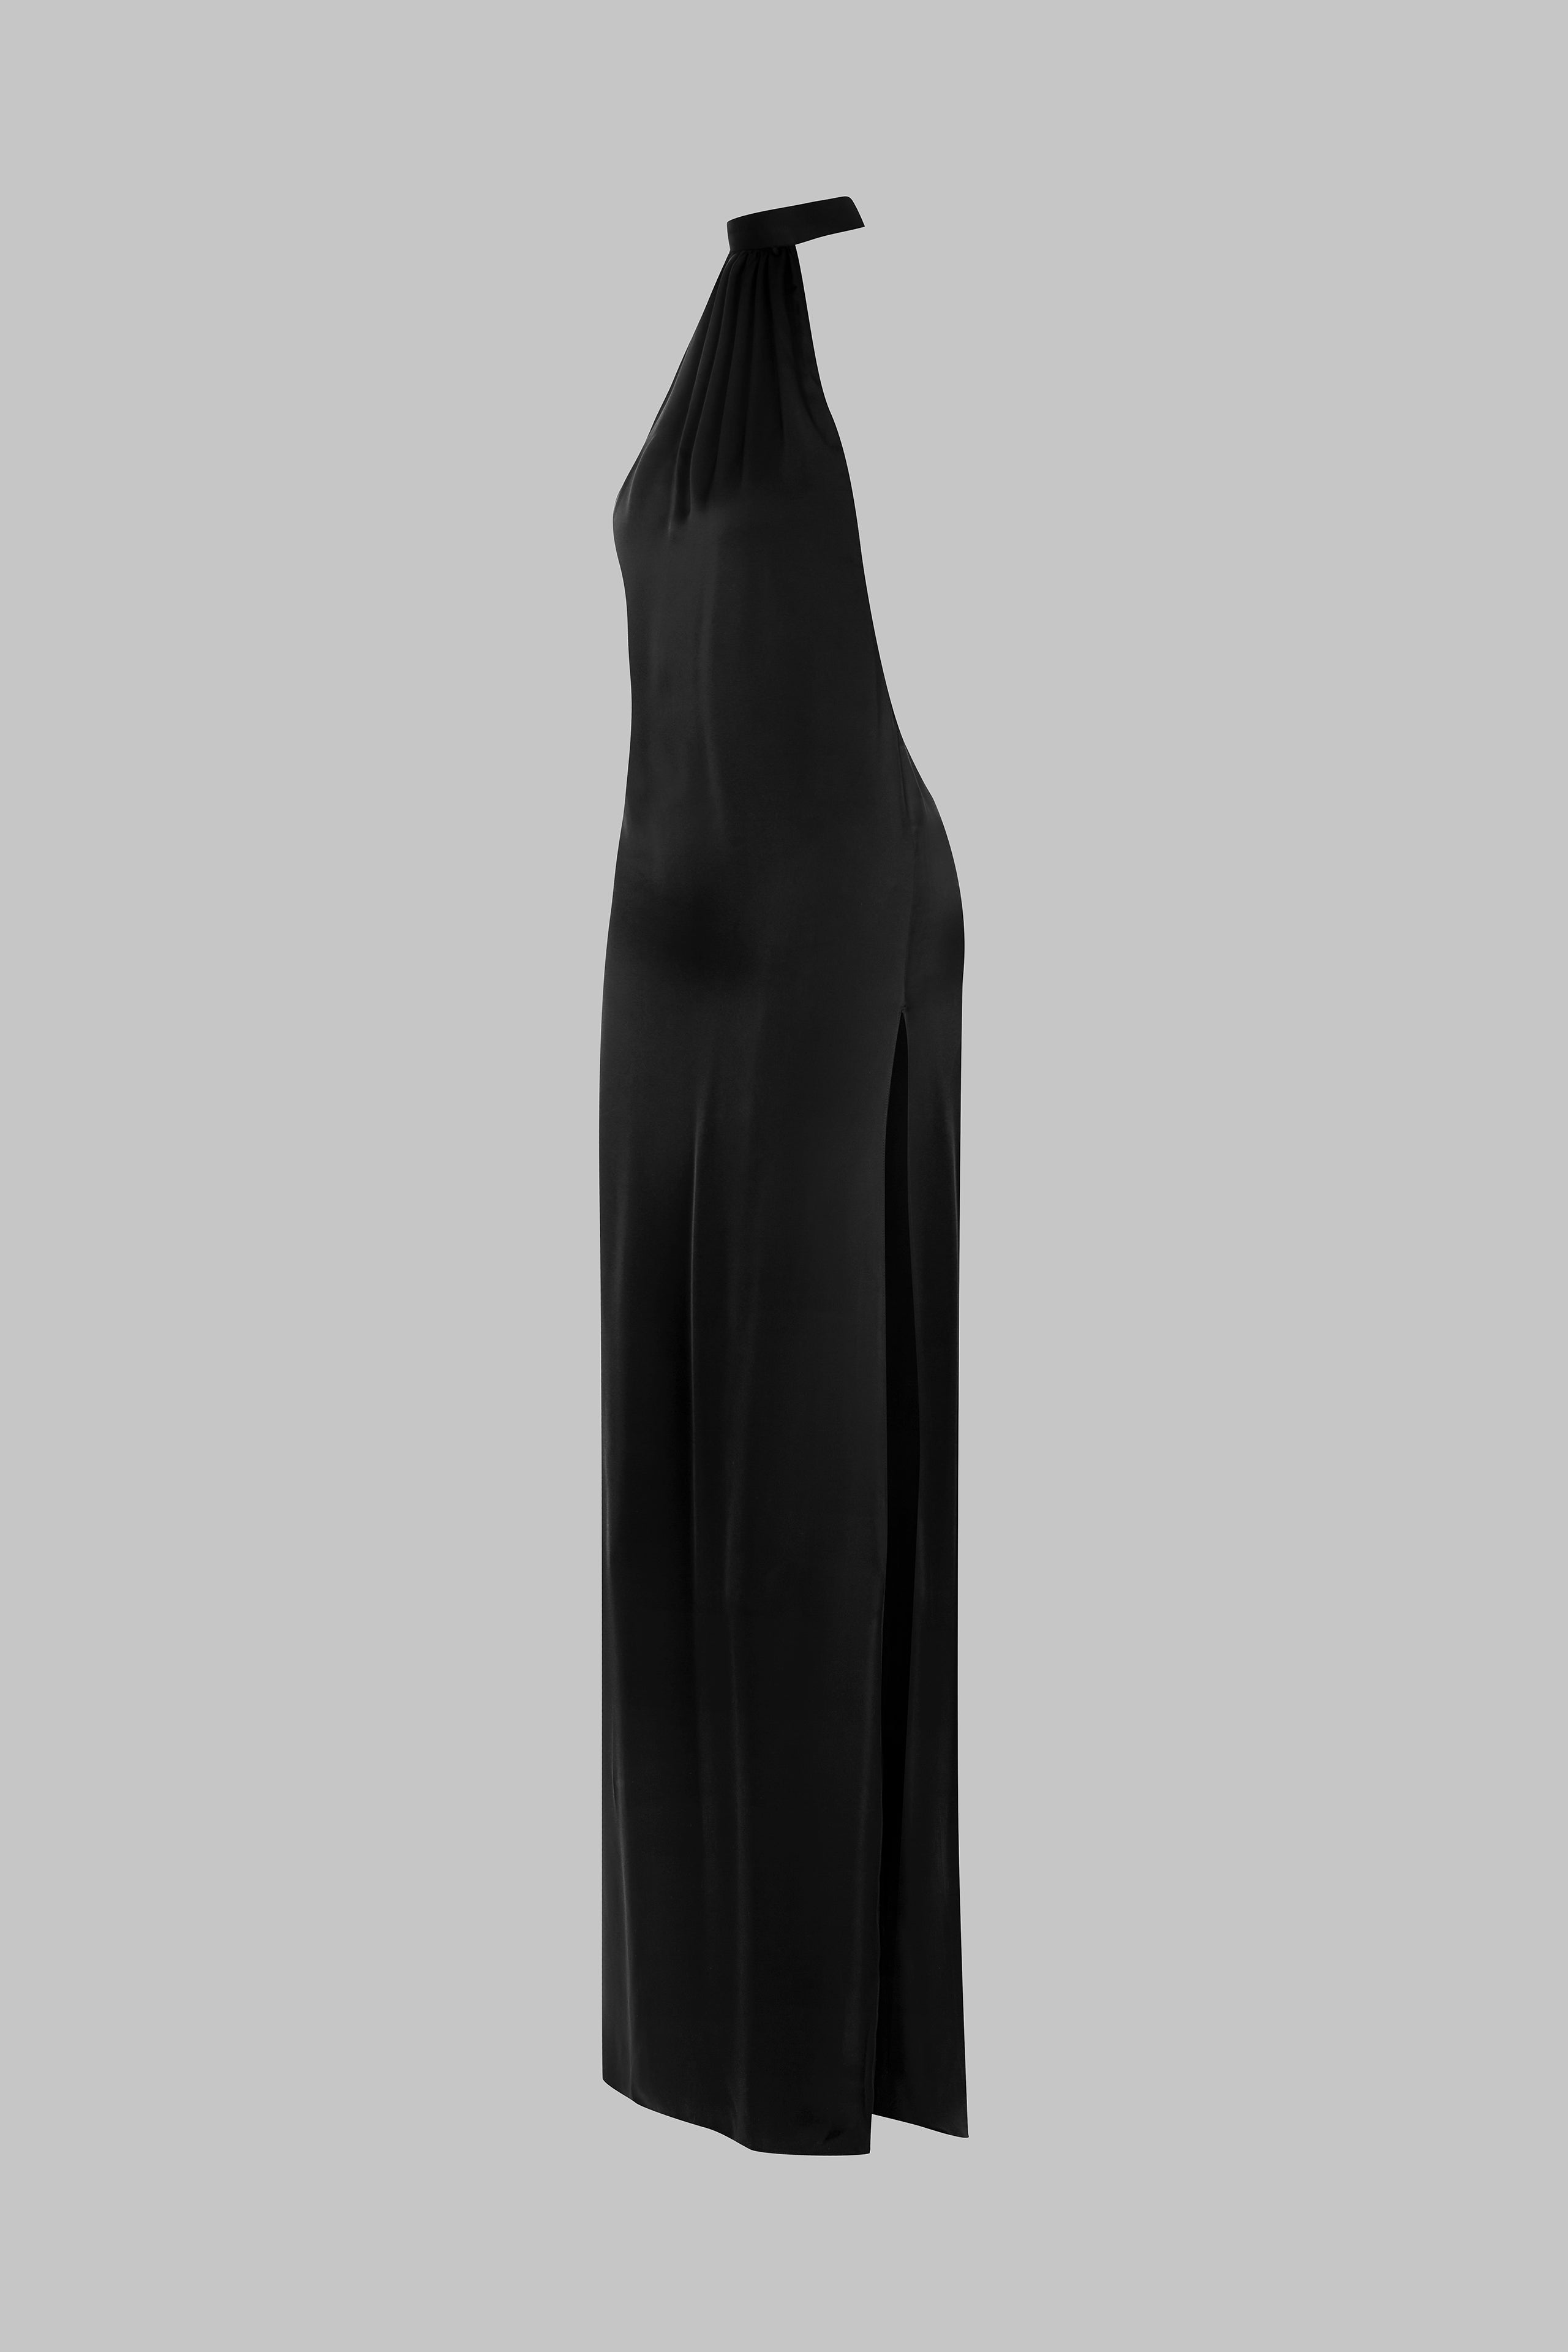 017 - Langes, rückenfreies Kleid aus Satin mit amerikanischem Ausschnitt